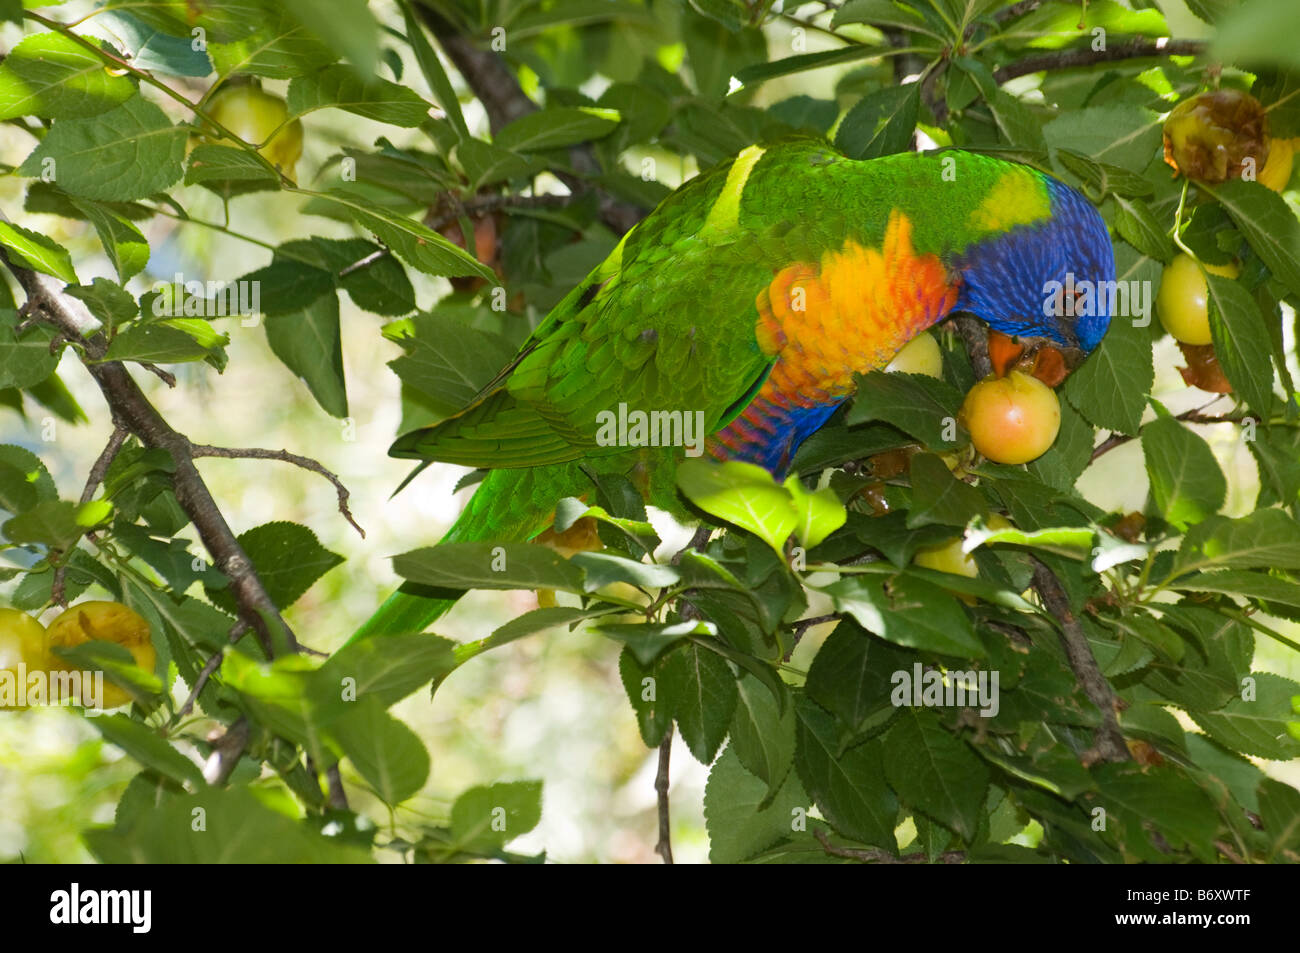 A rainbow lorikeet feeding on fruit Stock Photo